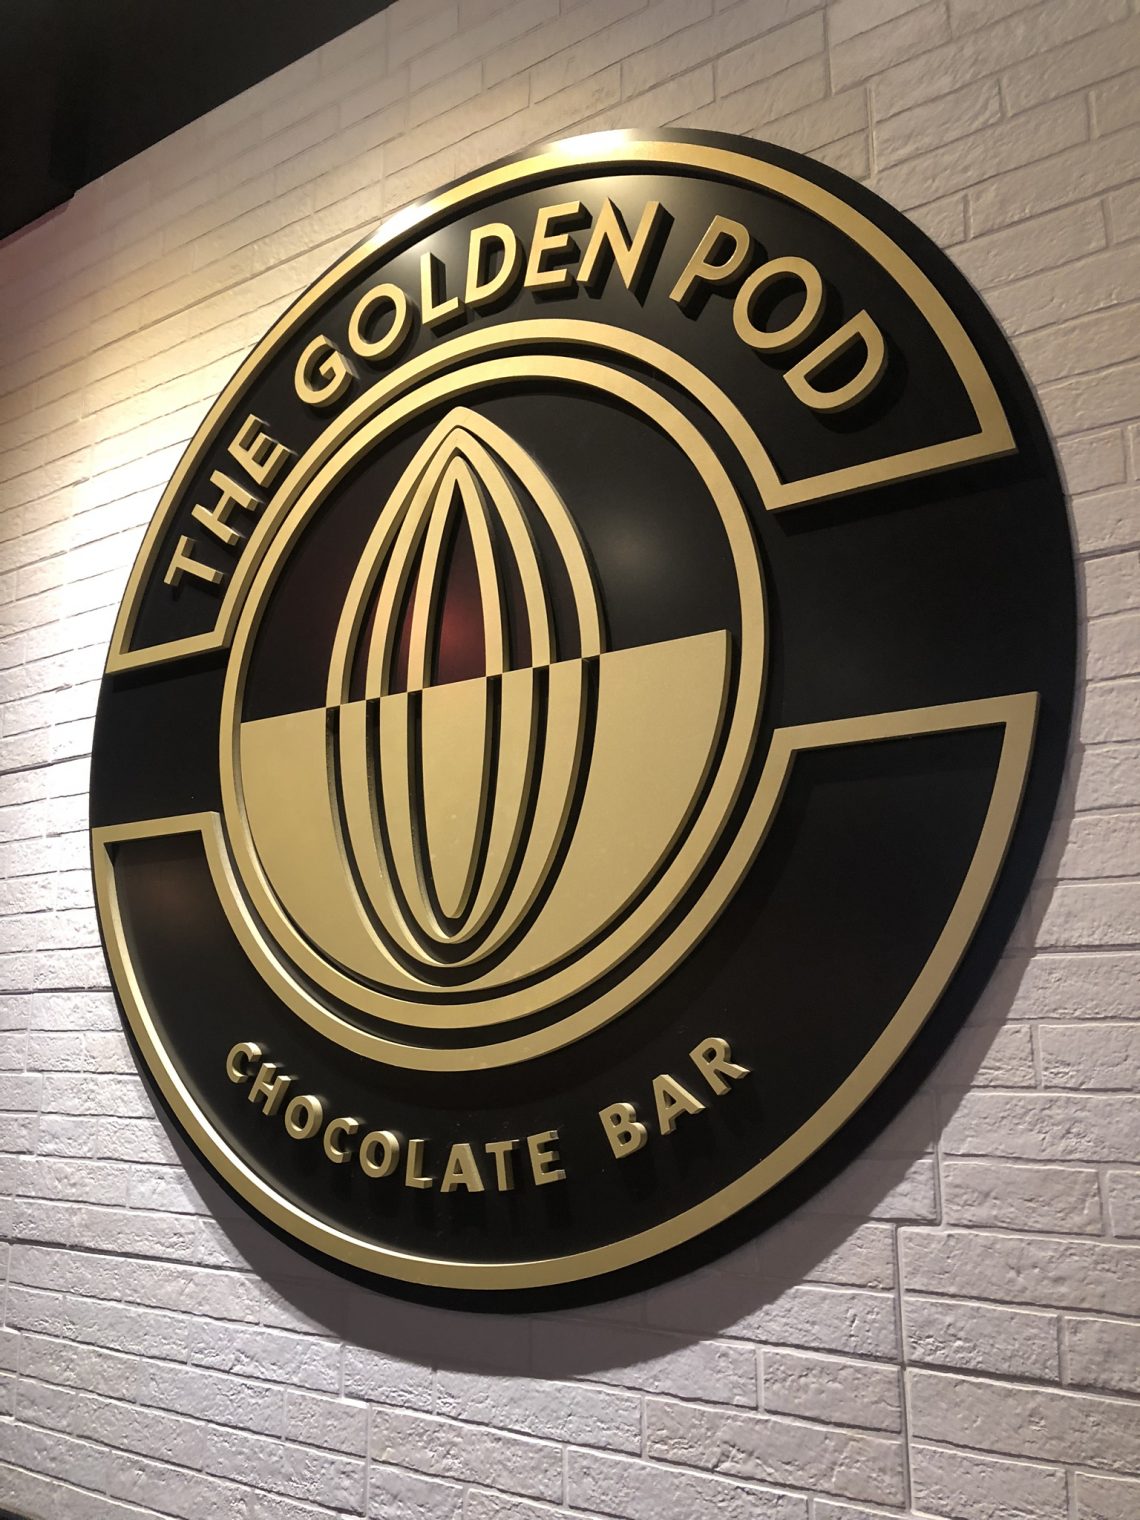 Golden Pod Orlando